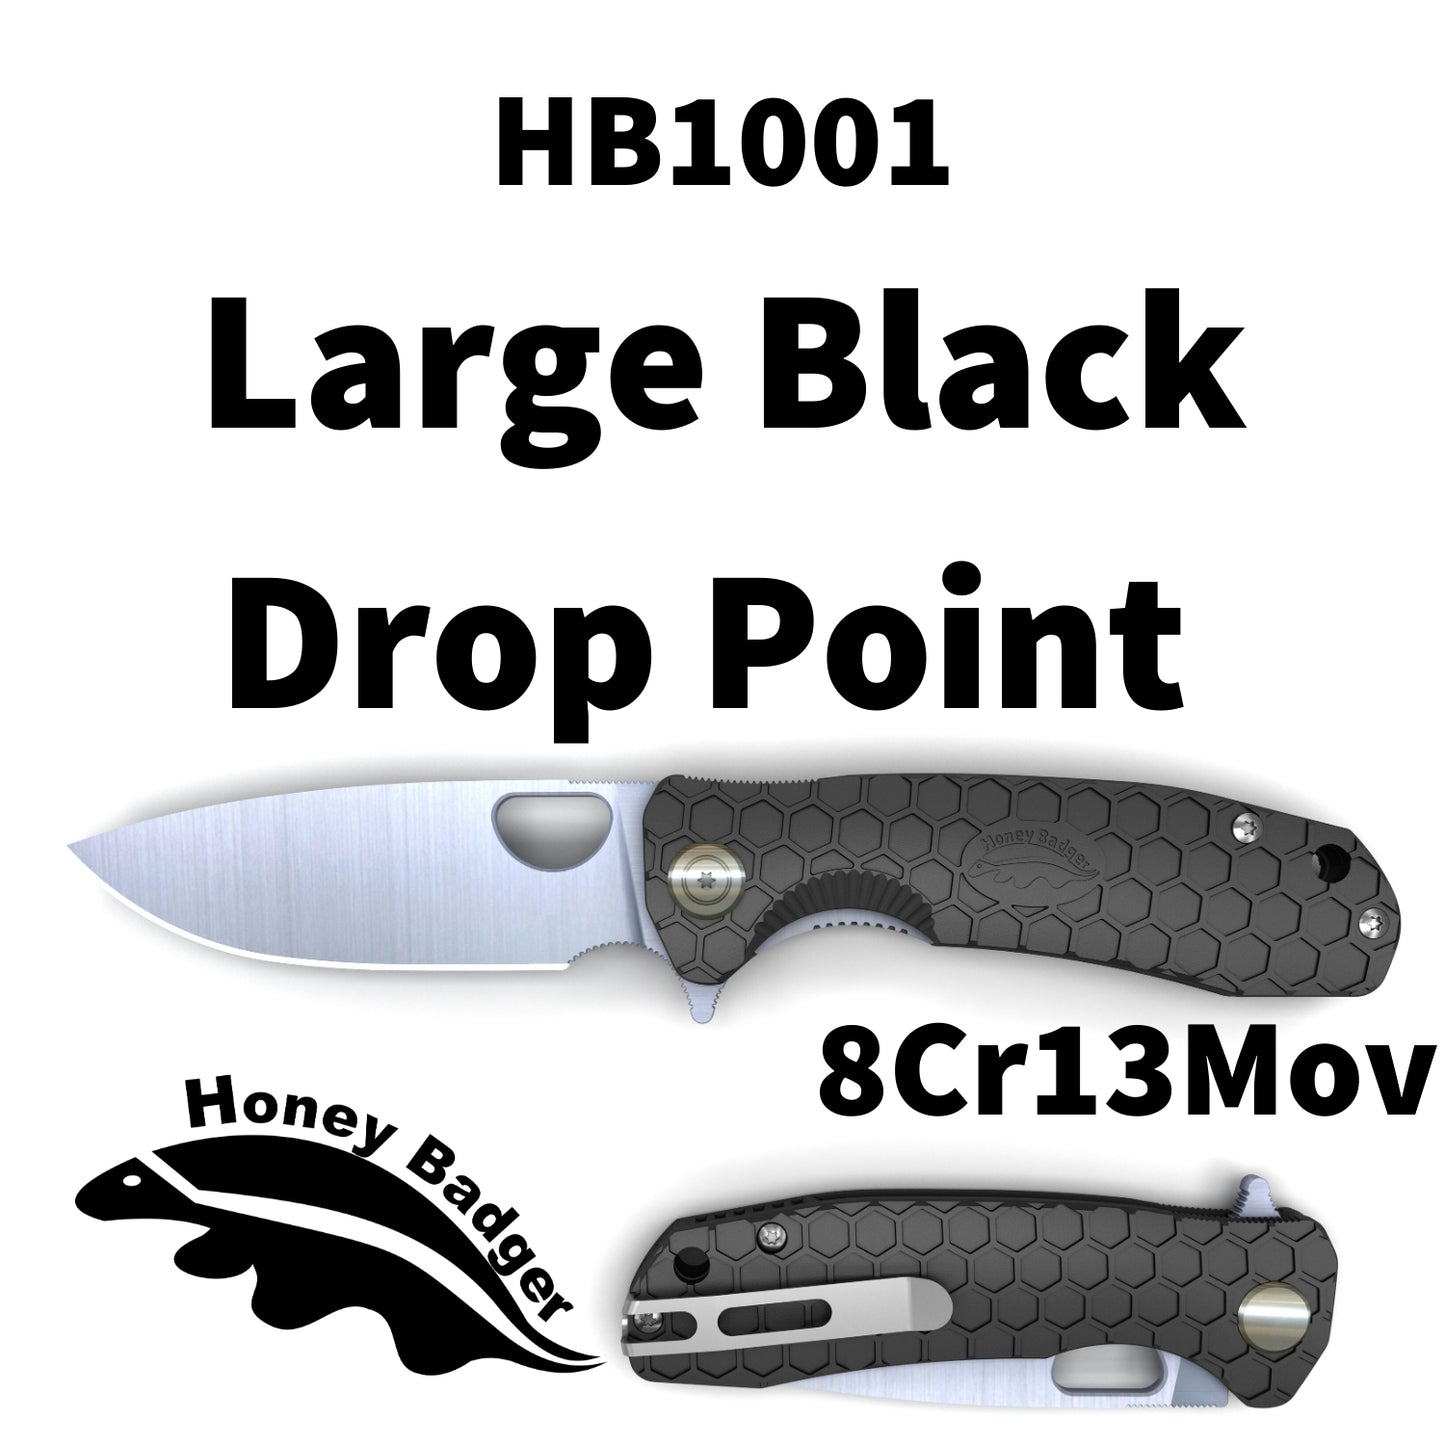 HB1001 - HONEY BADGER FLIPPER LARGE BLACK